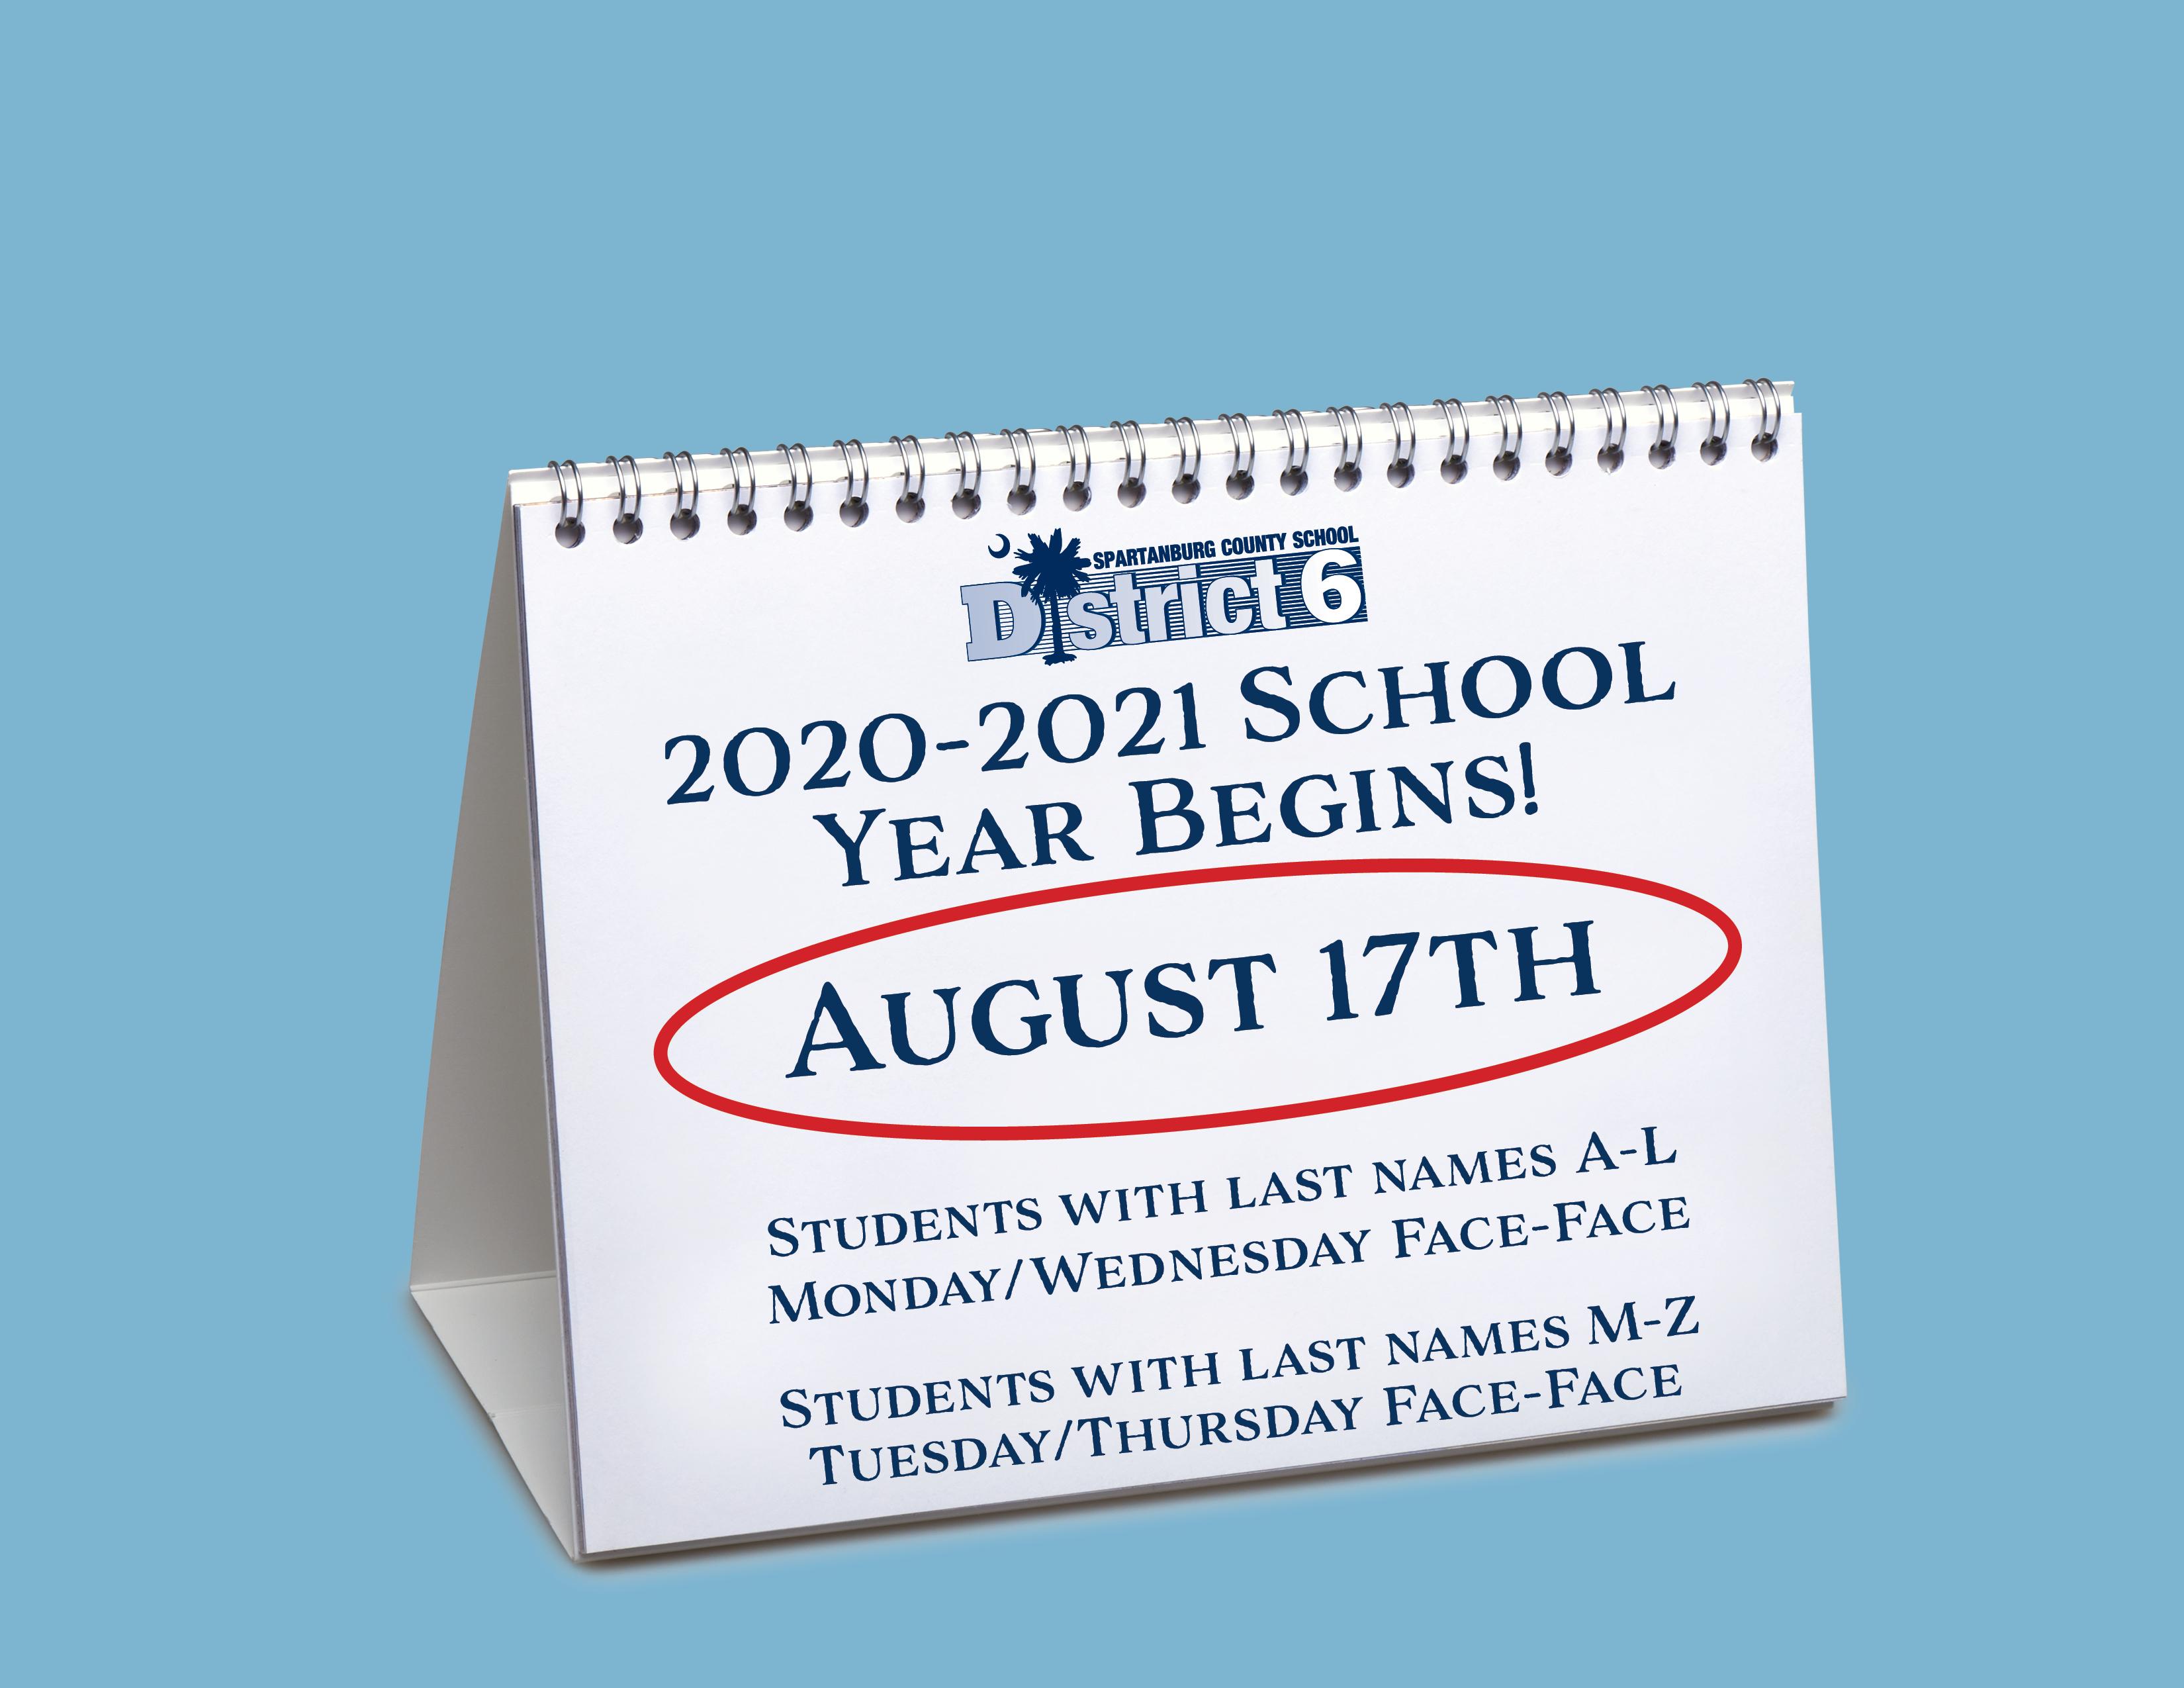 School year begins August 17